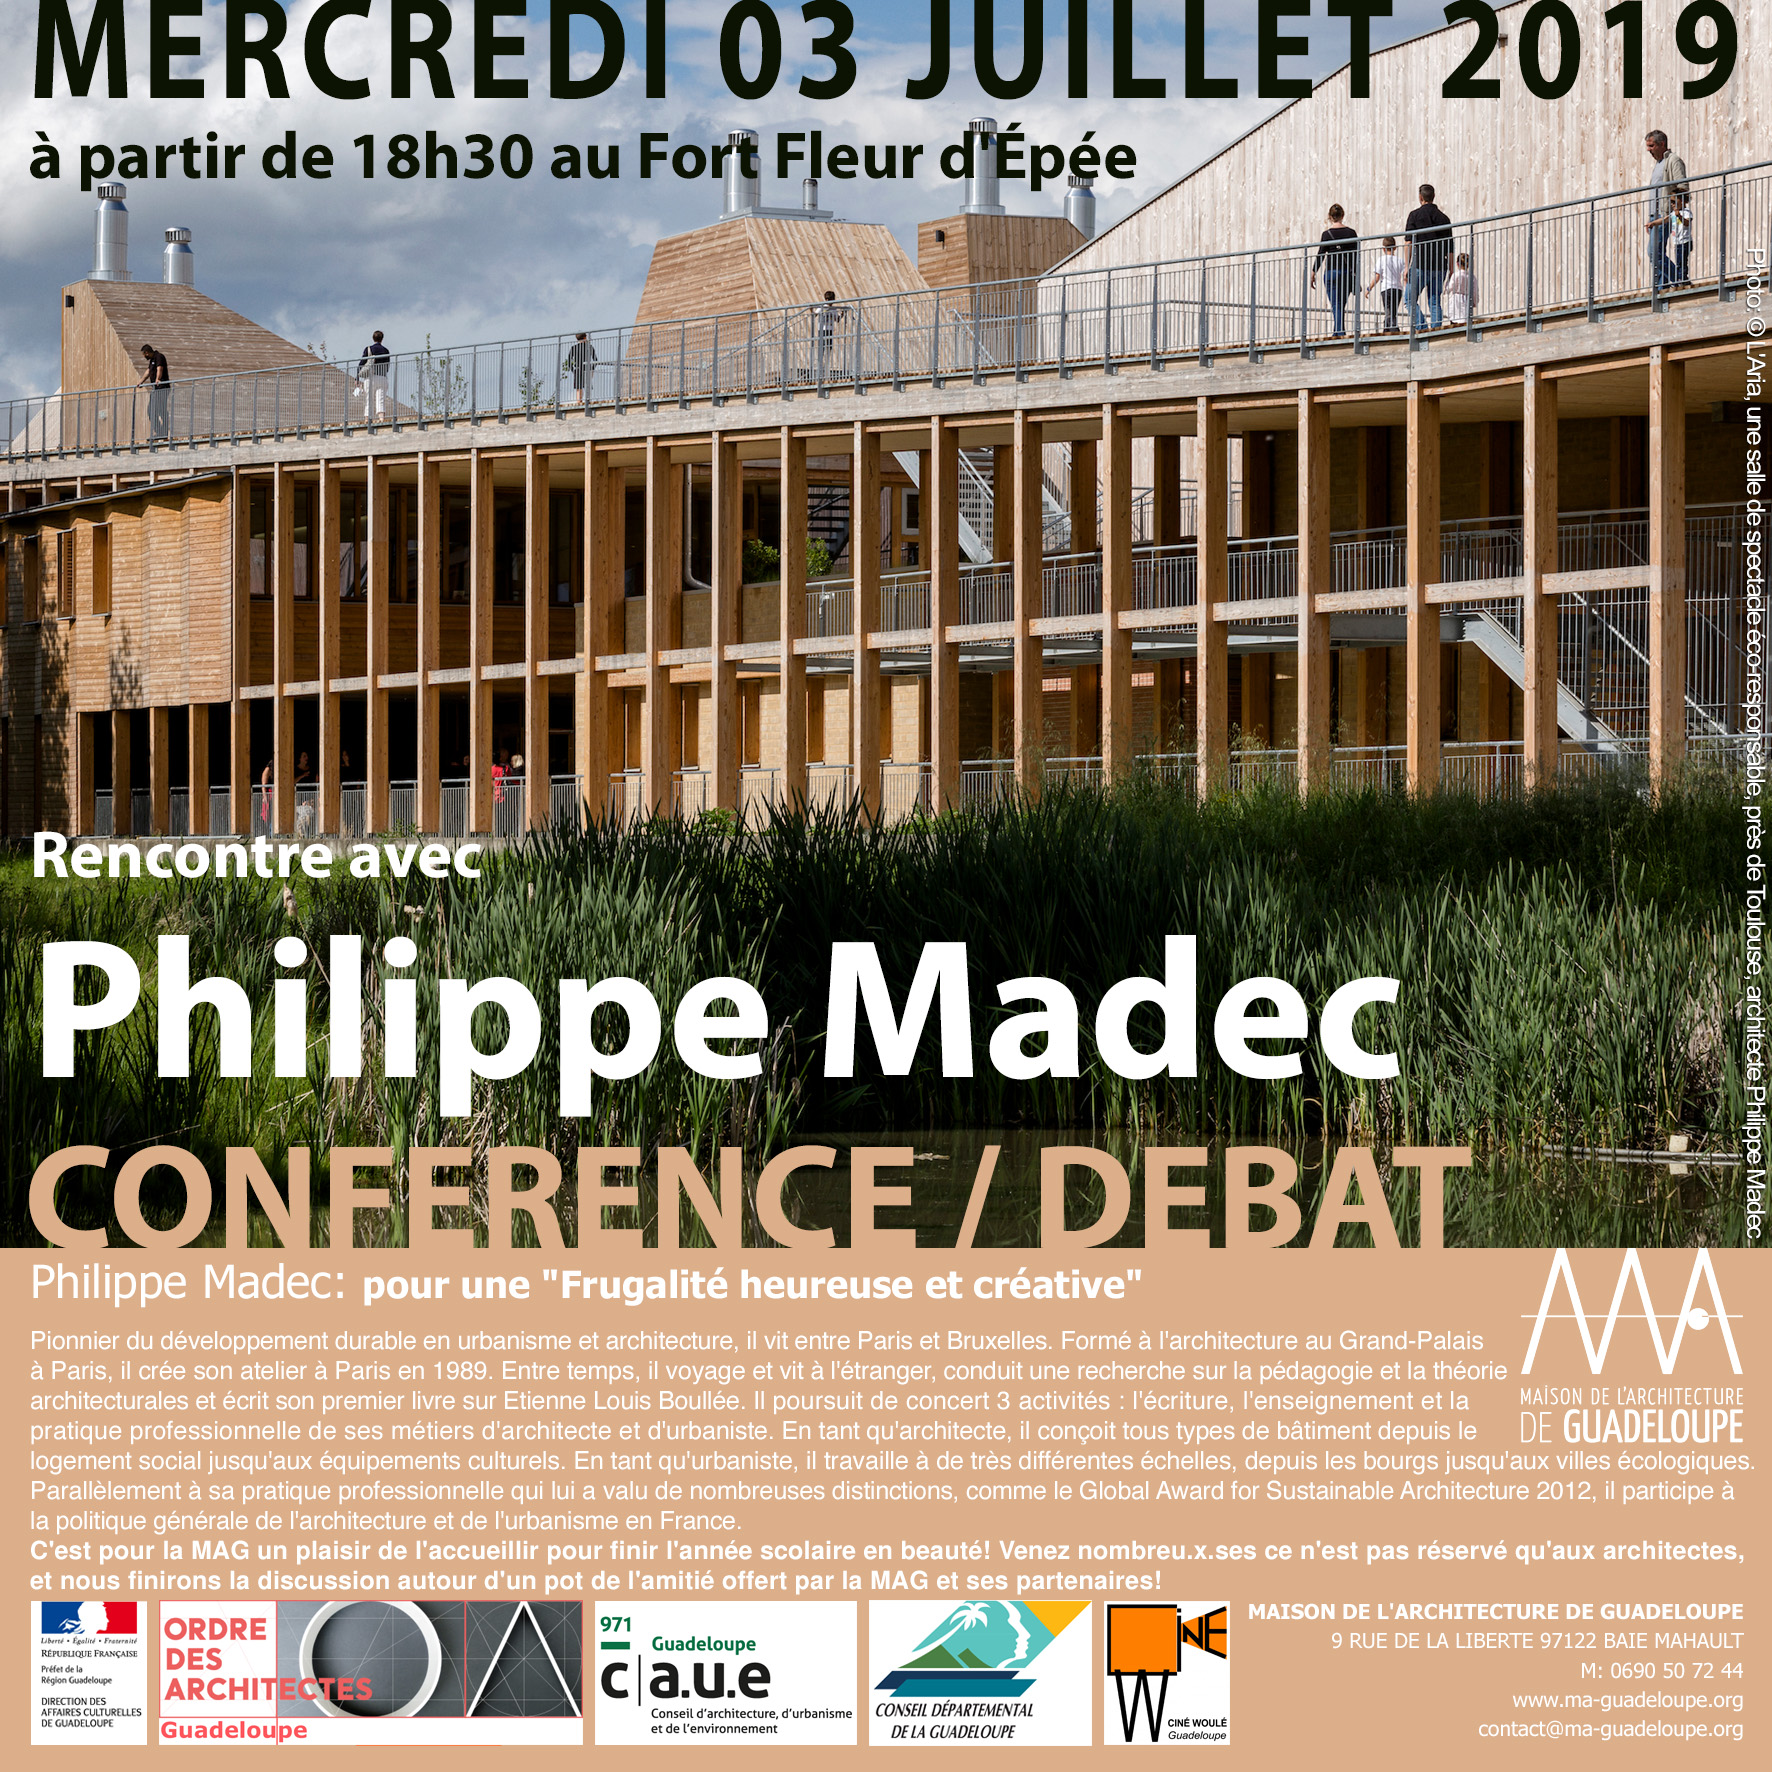 You are currently viewing Retour en image : Conférence-Débat de Philippe Madec au Fort Fleur d’Epée. Mercredi 03 juillet 2019